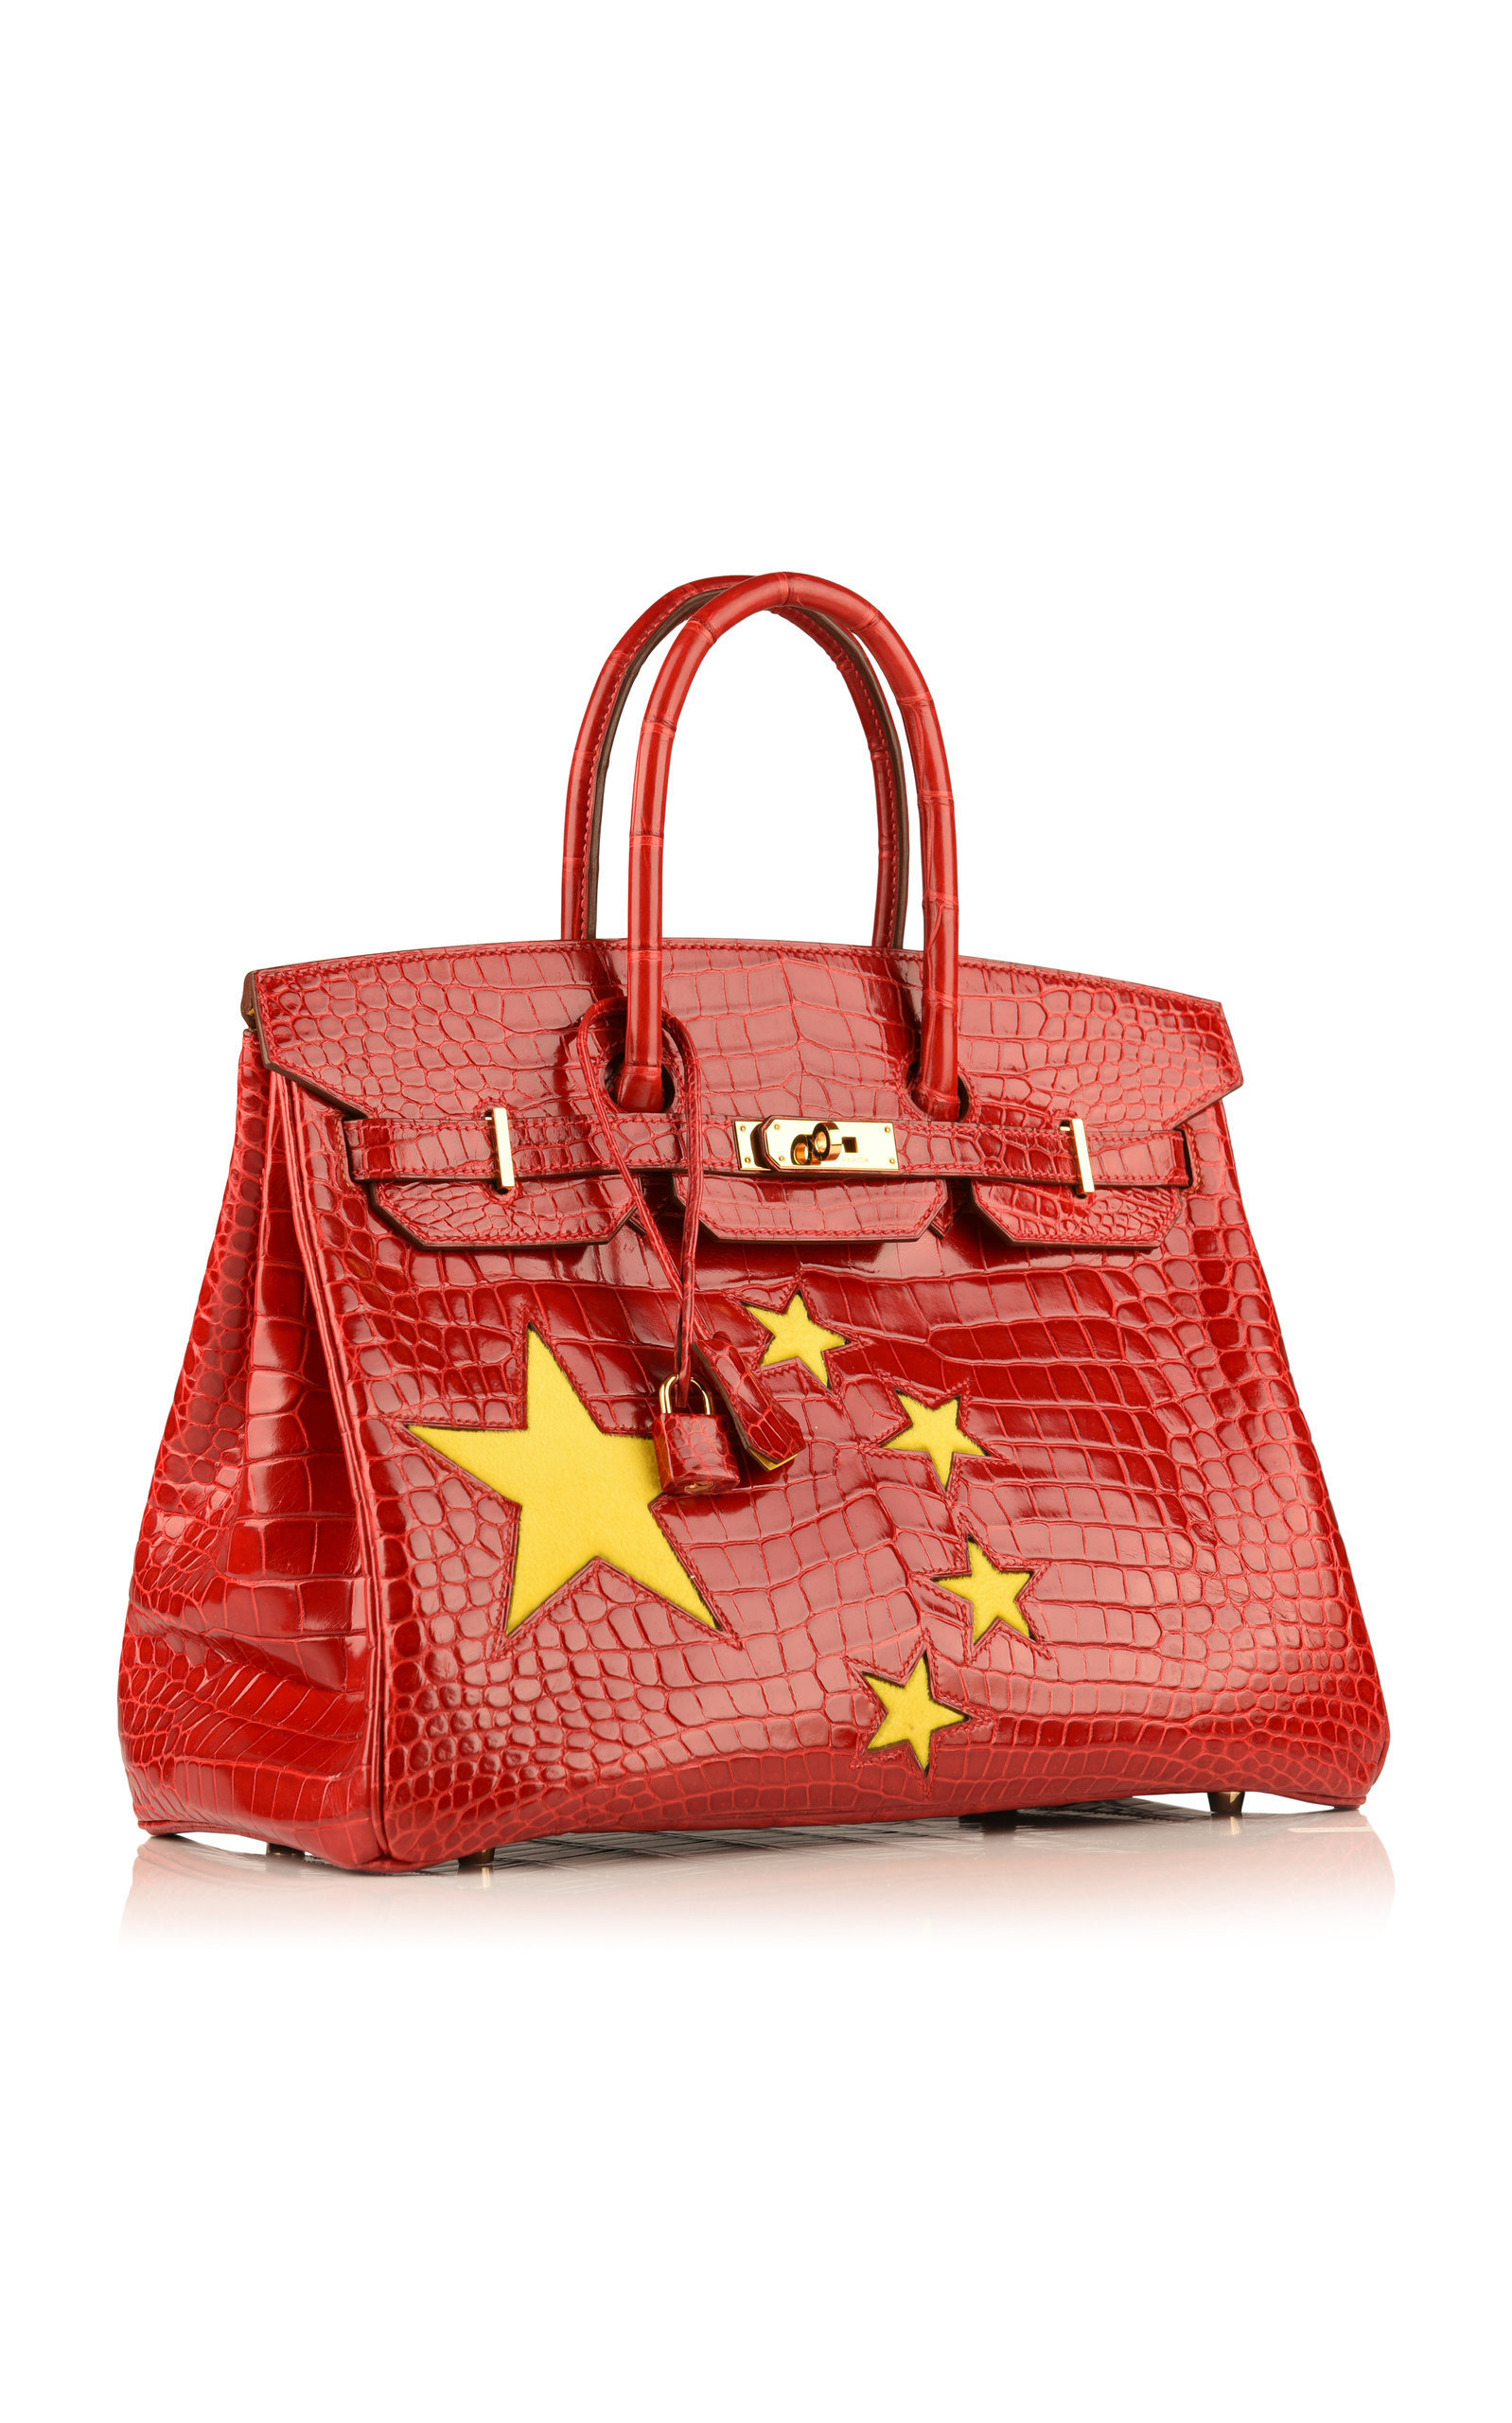 Birkin bag with PRC flag design sold online for S$174,000